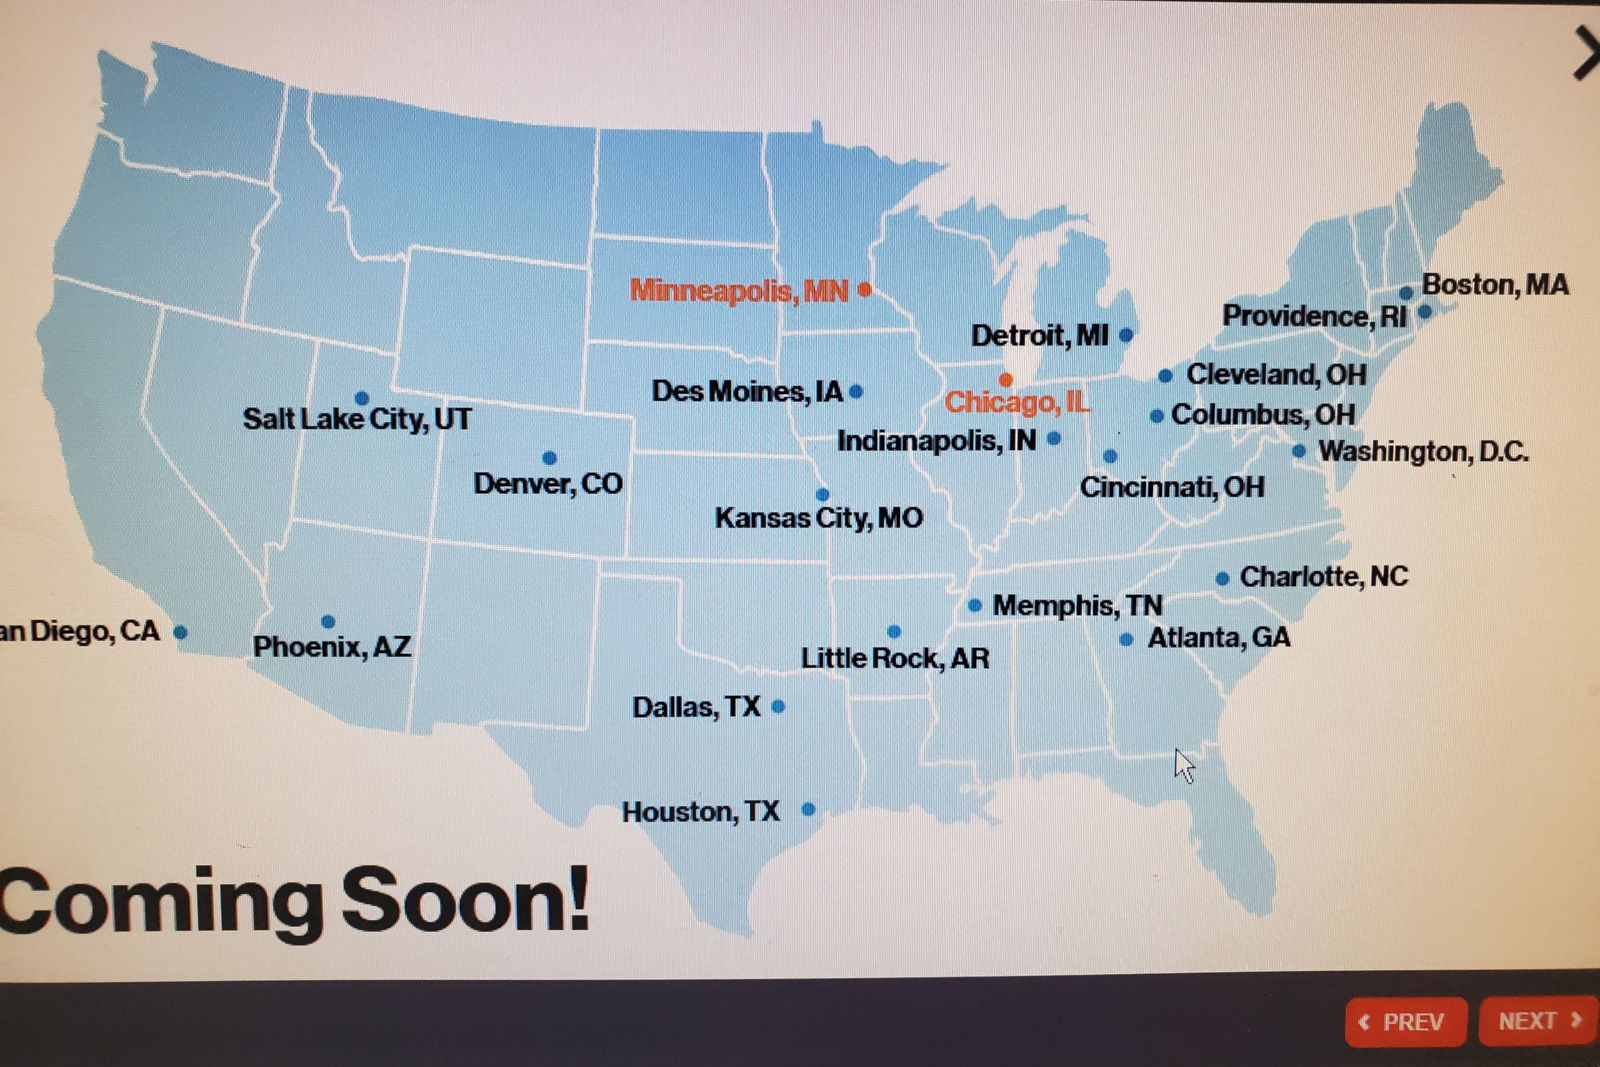 A cobertura de rede 5G da Verizon será lançada em mais 20 cidades nos EUA